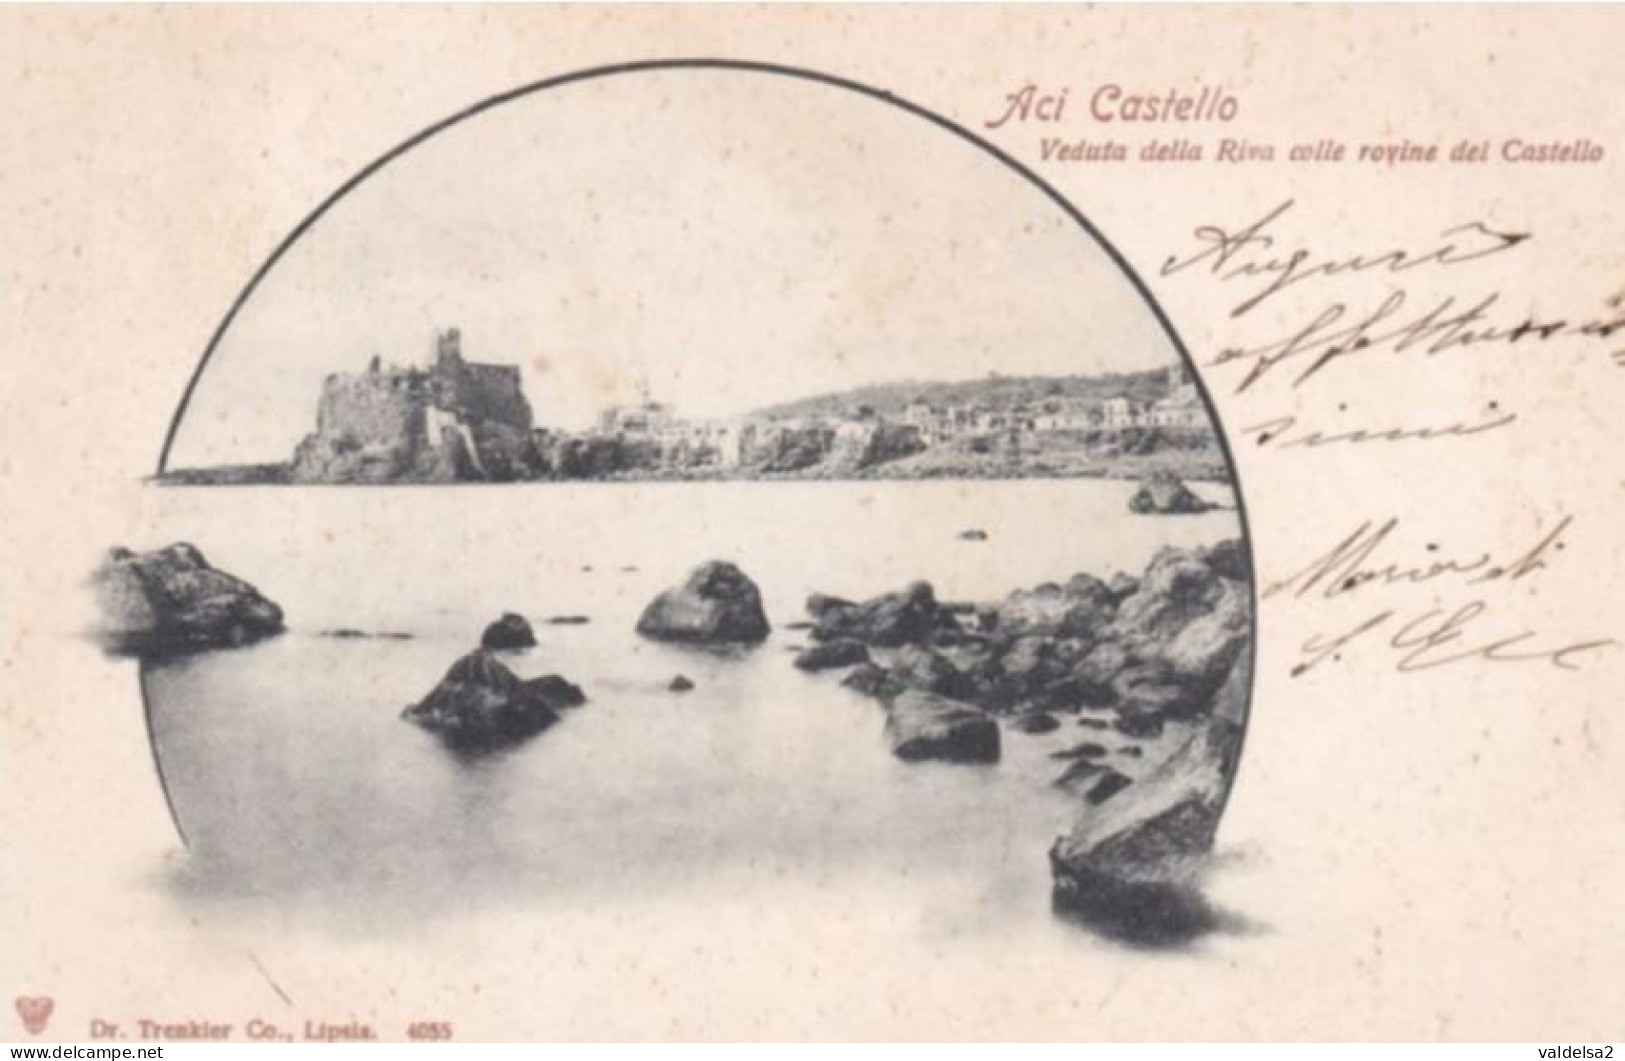 ACI CASTELLO - DINTORNI DI ACIREALE E CATANIA - VEDUTA DELLA RIVA CON LE ROVINE DEL CASTELLO - TIPO GRUSS AUS - 1903 - Acireale